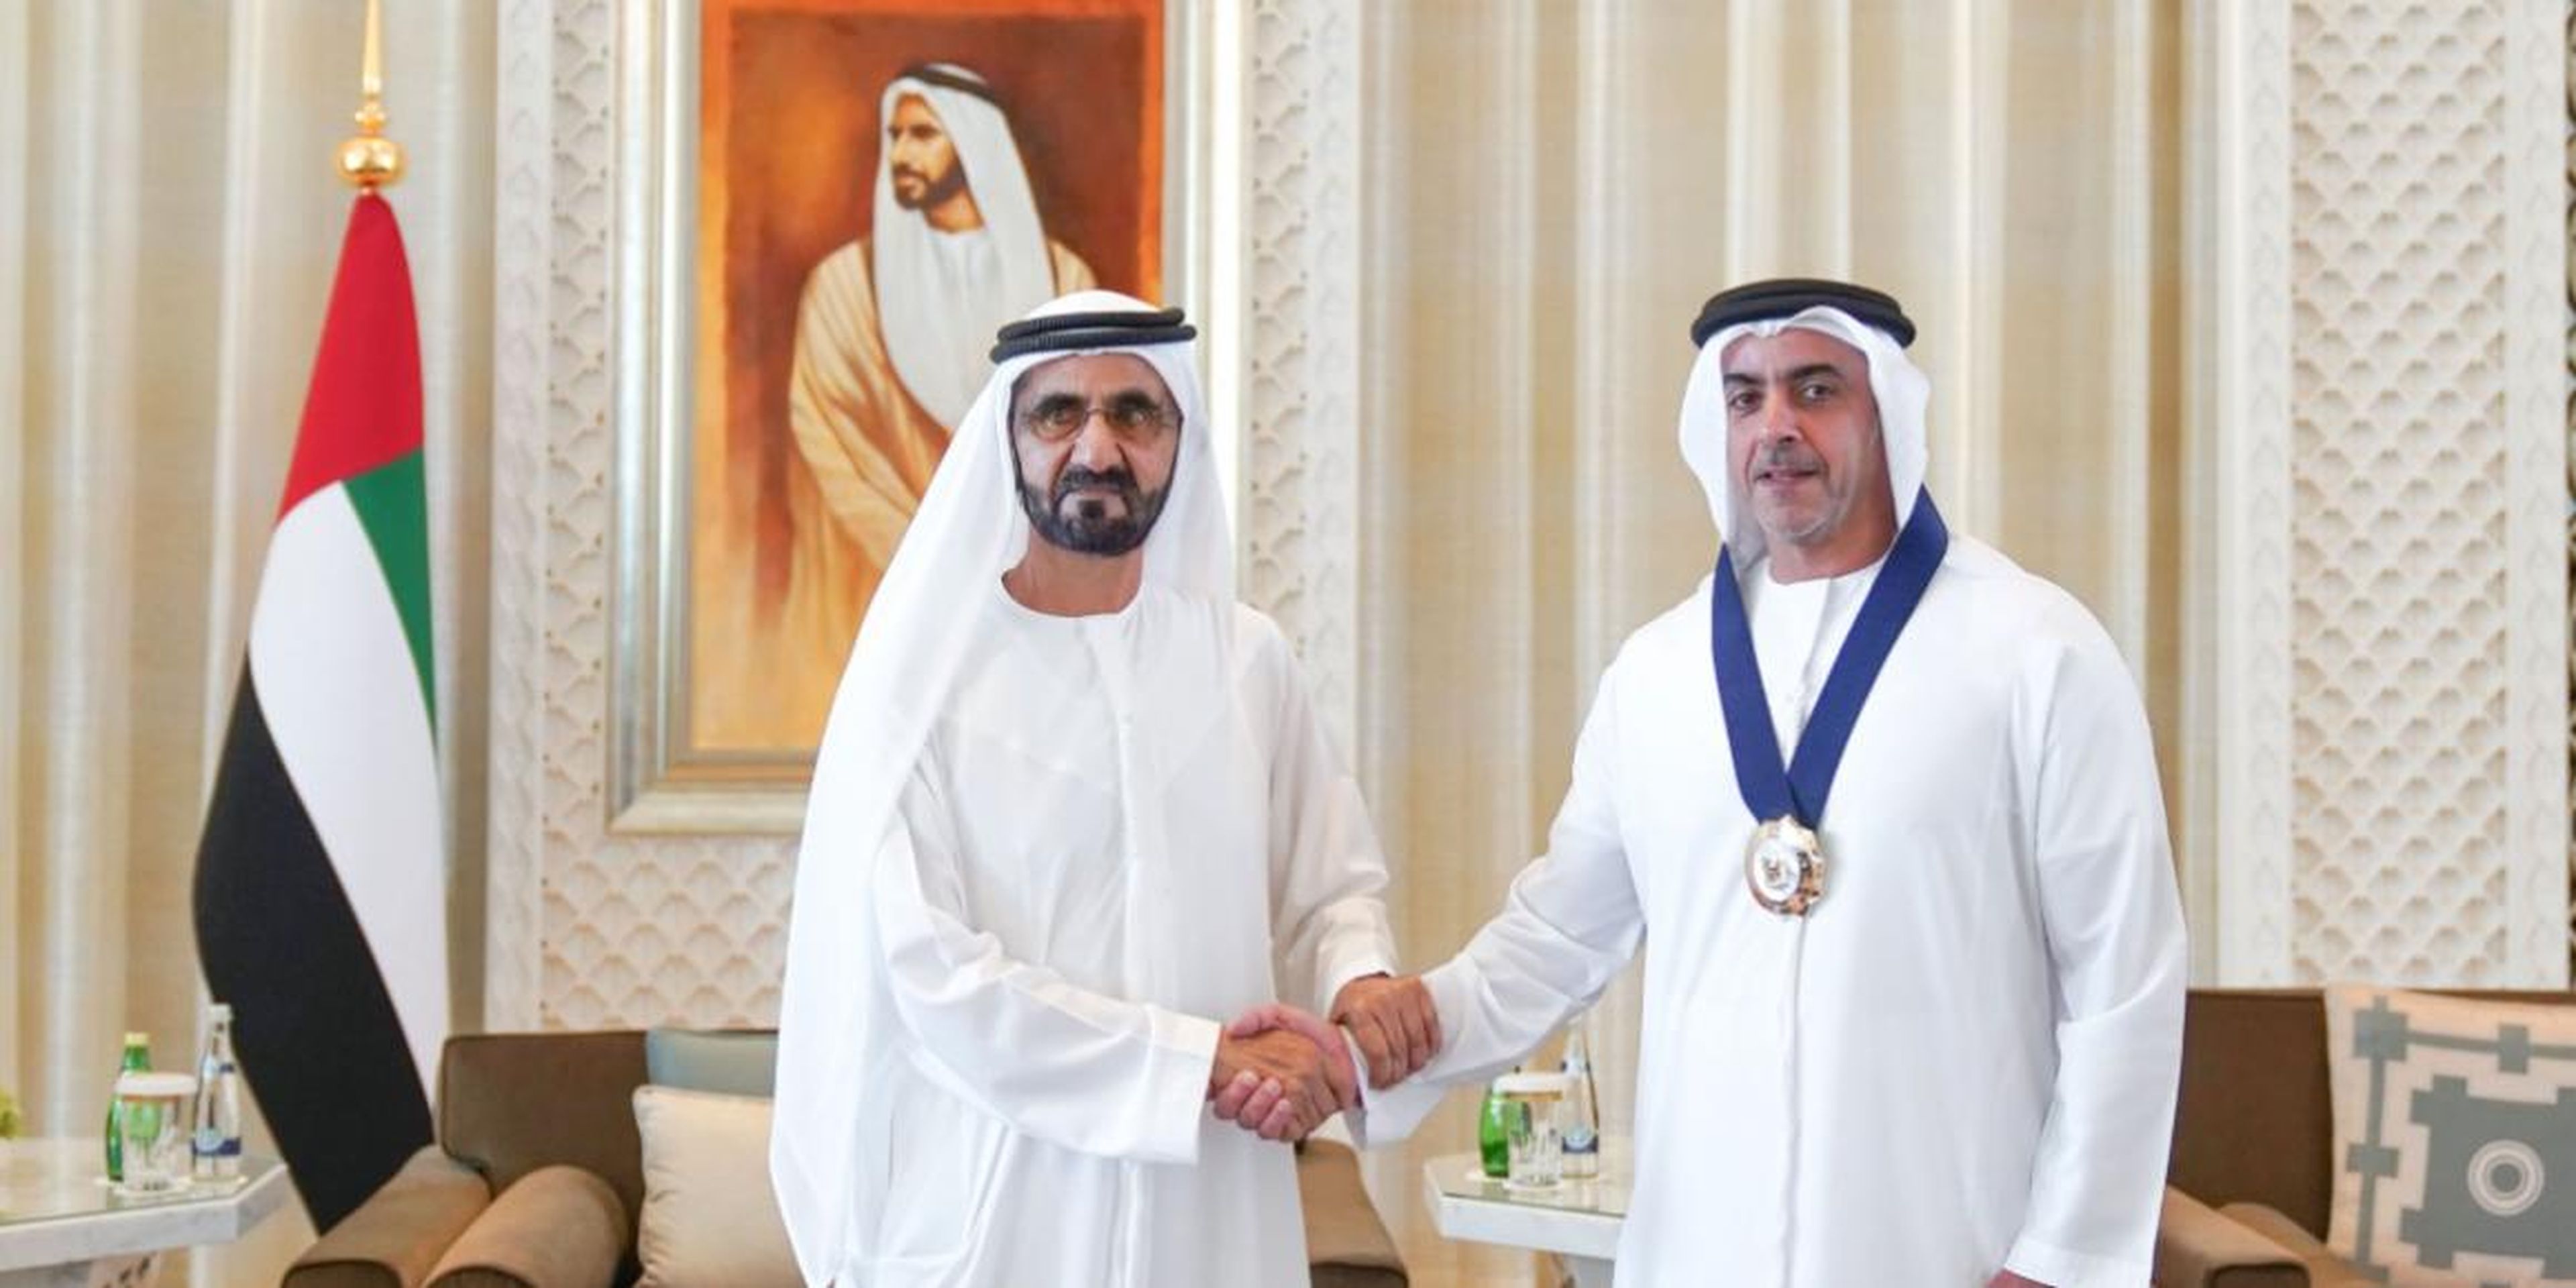 El emir con el teniente Sheikh Saif bin Zayed al-Nahyan.